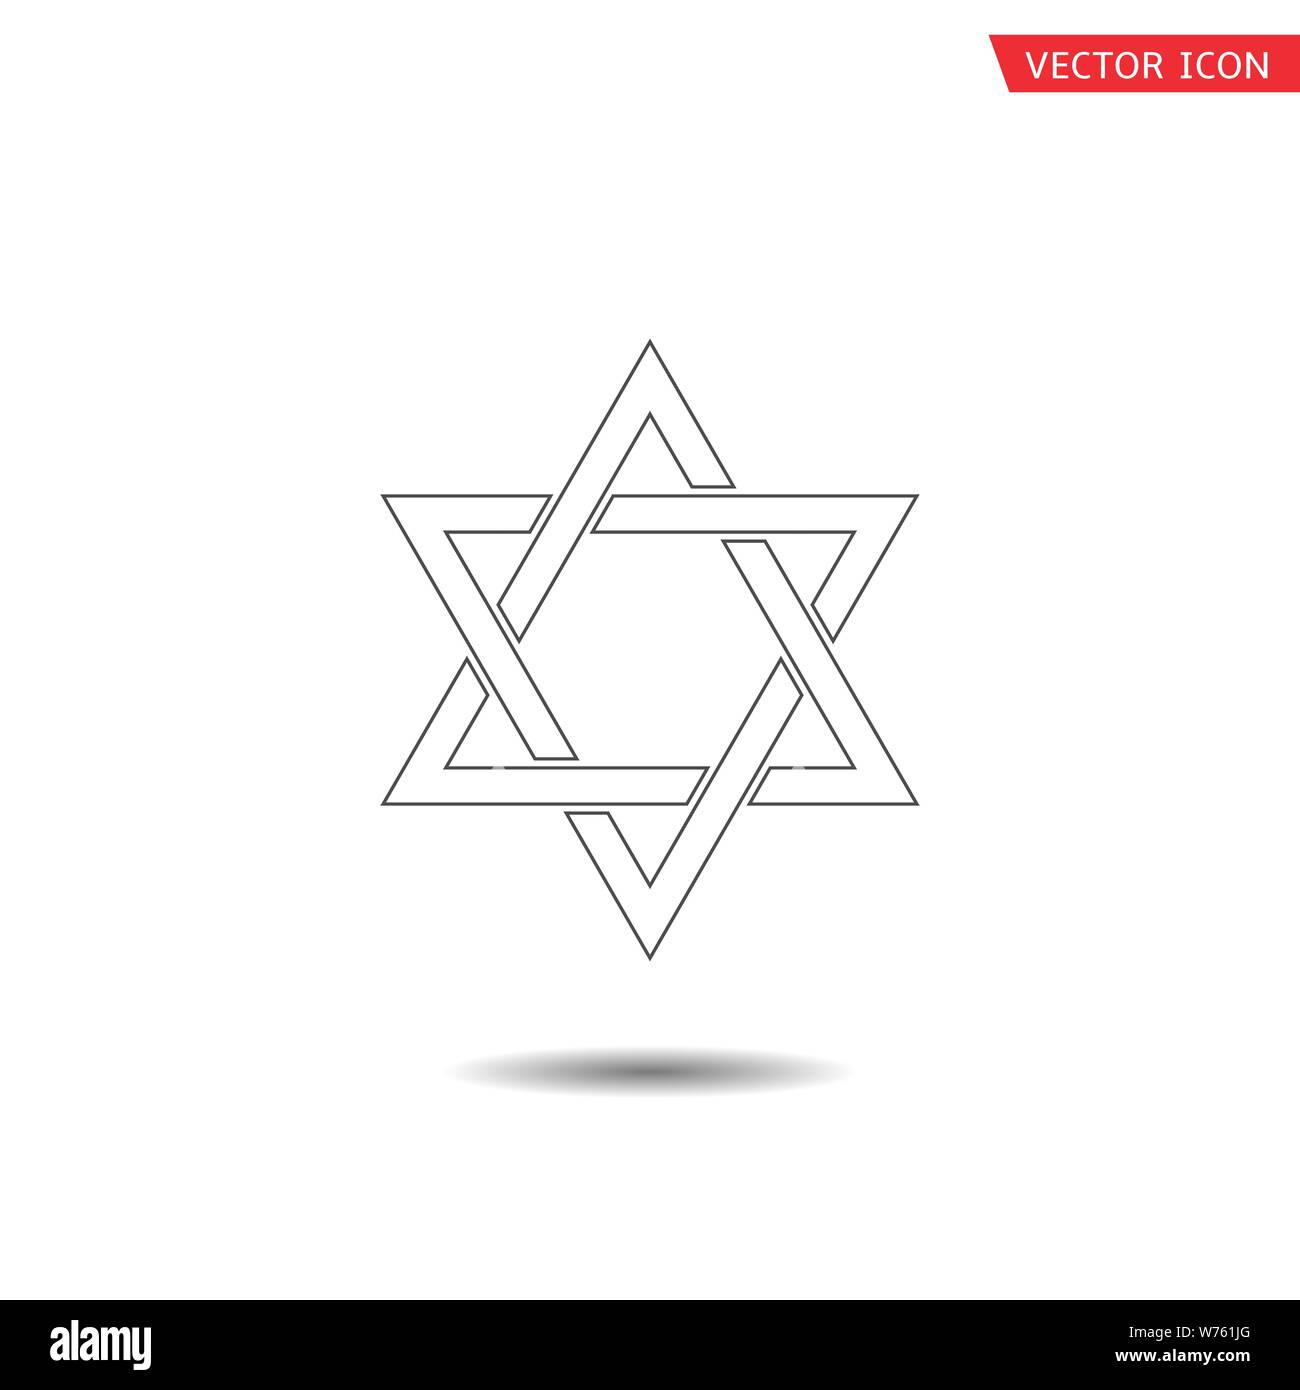 Übersicht David Stern Symbol. Sechs wies Geometrische star Abbildung, allgemein anerkannten Symbol des modernen jüdischen Identität und Judentum Israel Symbol Stock Vektor